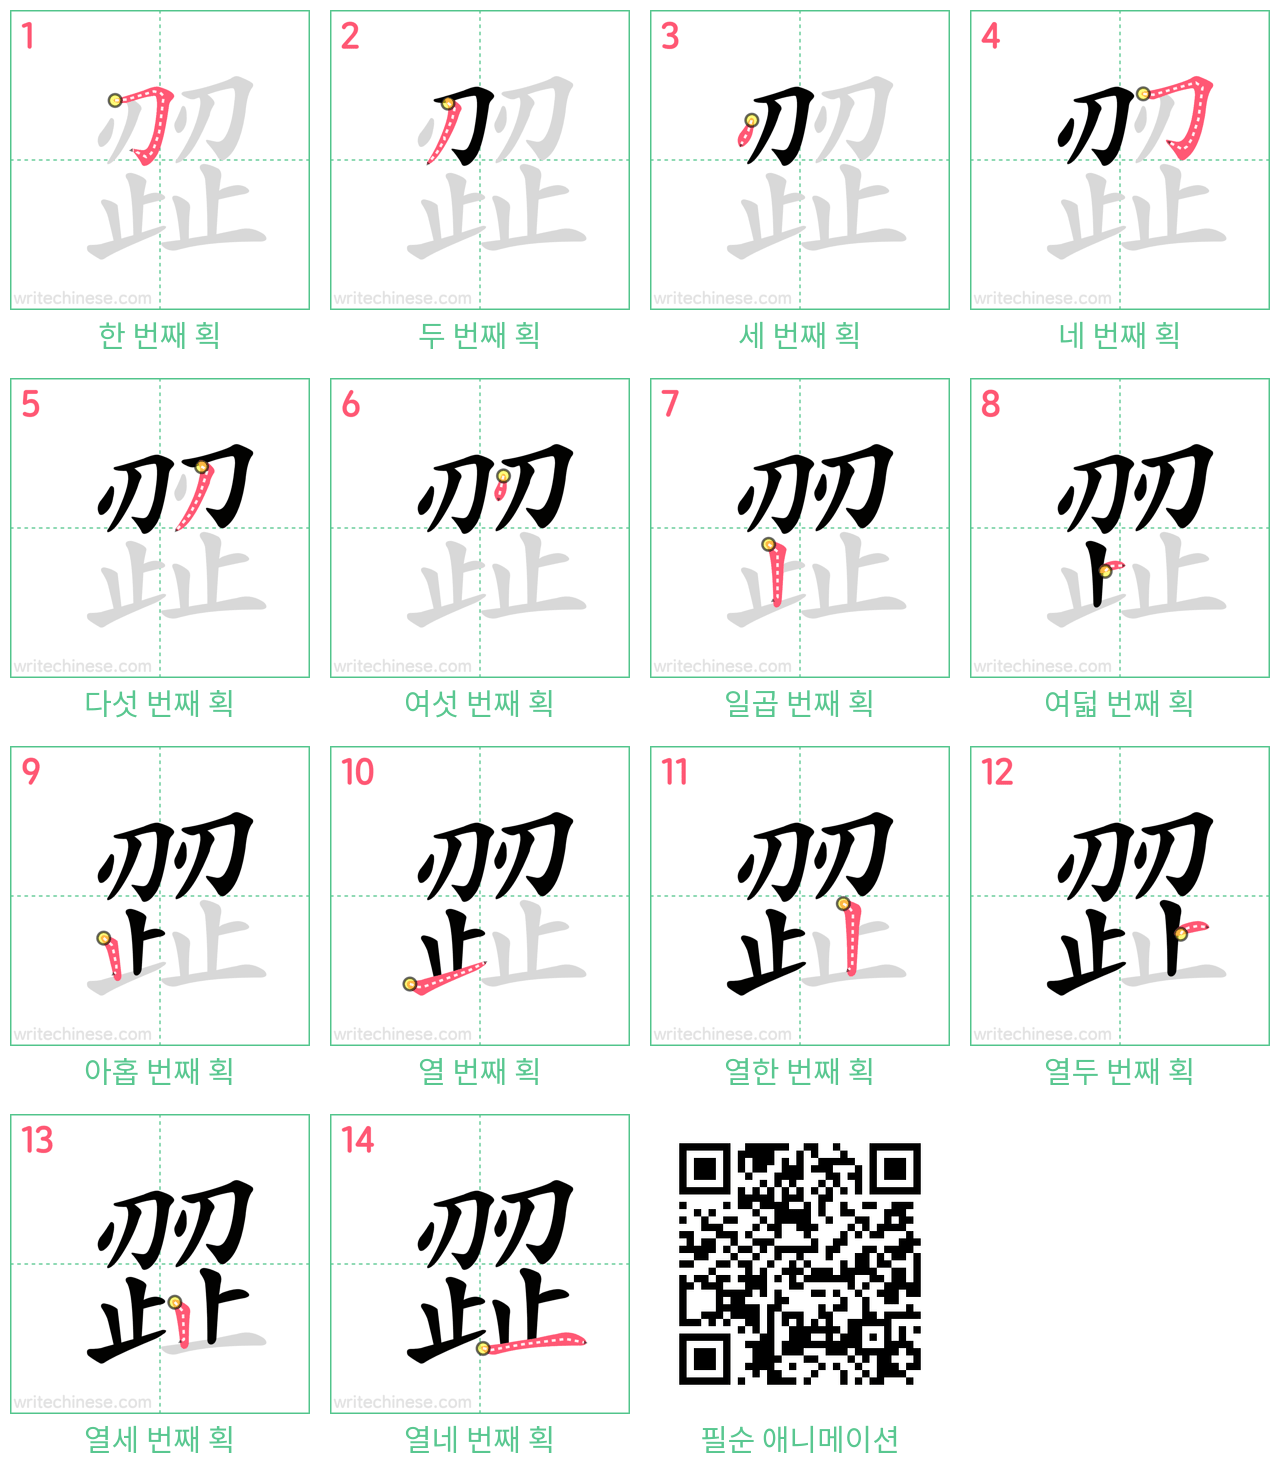 歰 step-by-step stroke order diagrams